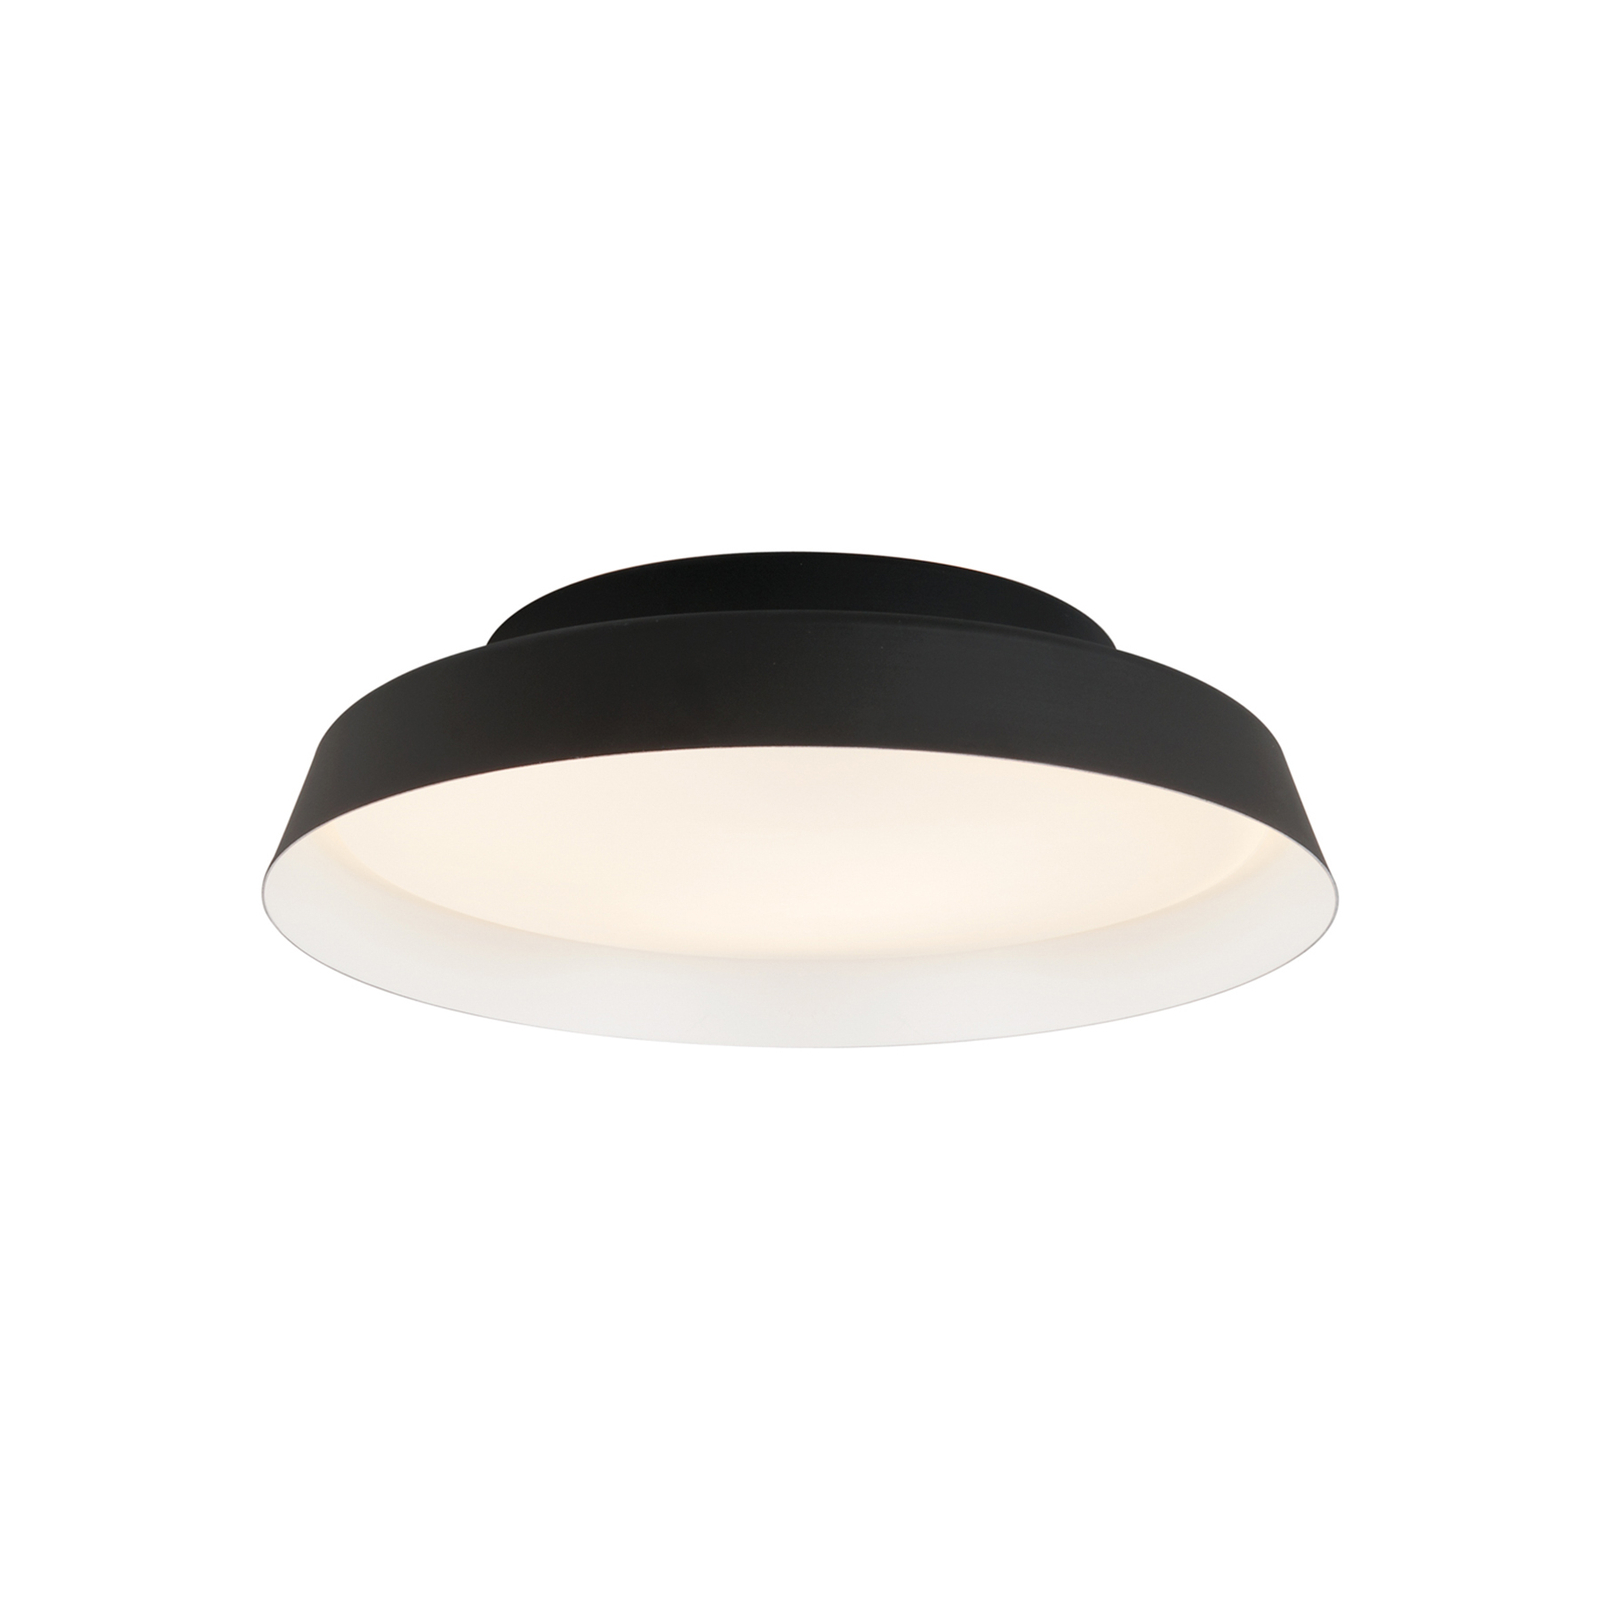 Boop! LED ceiling light Ø37cm black/white